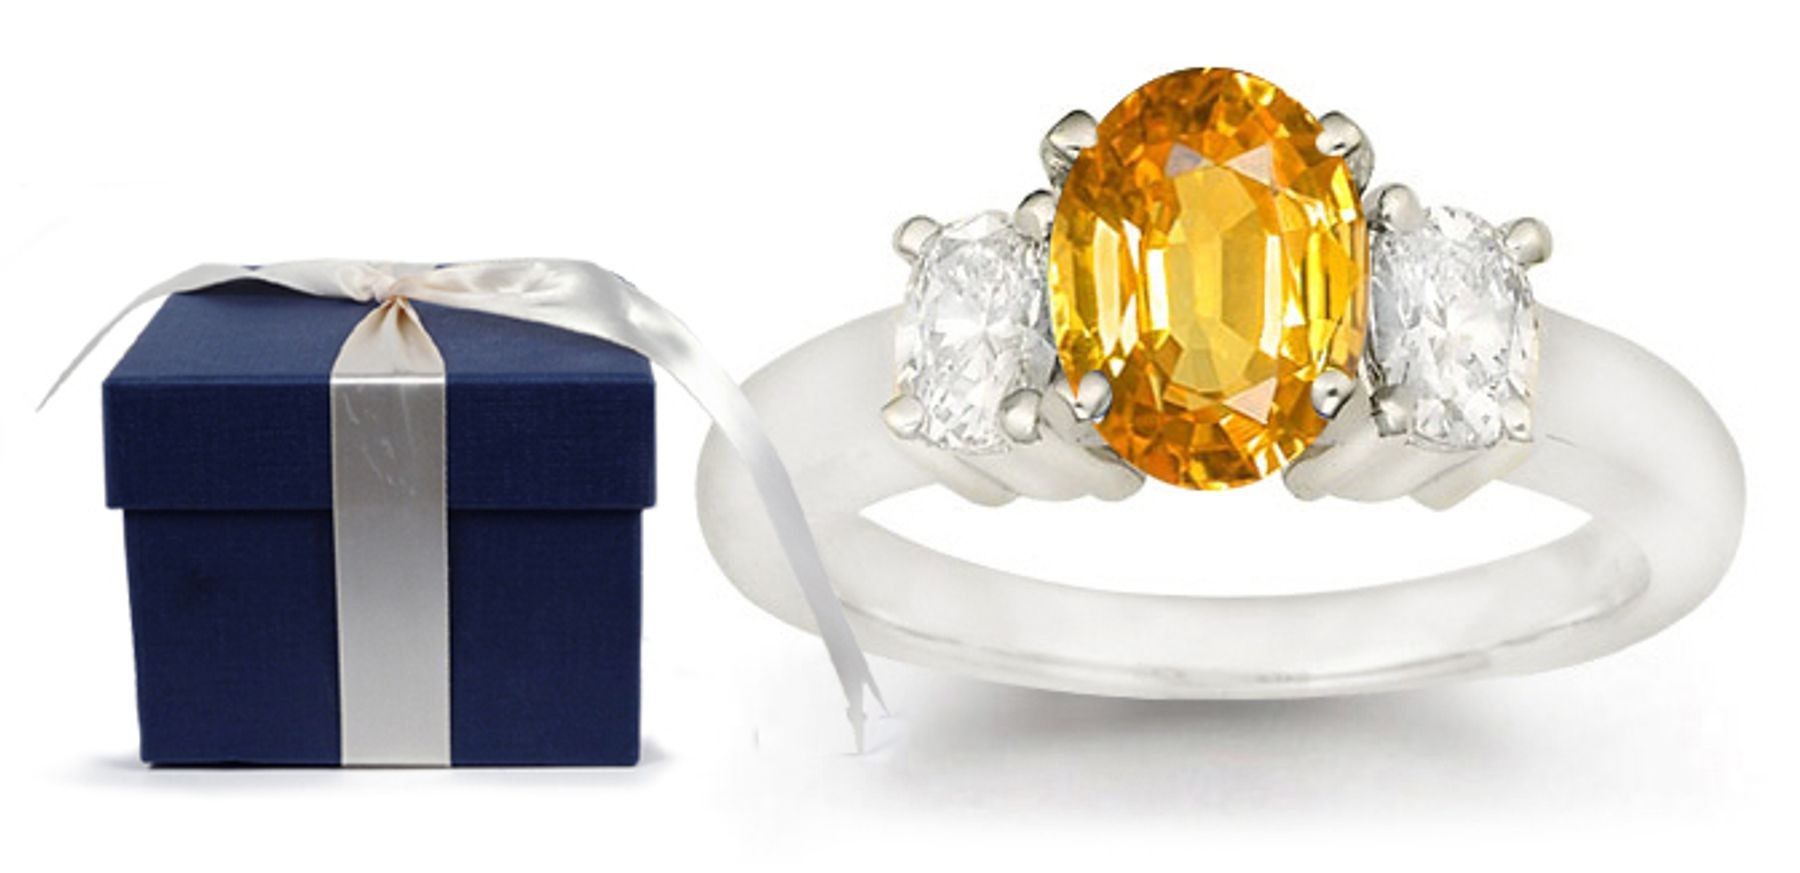 Diamond Anniversary Rings: Three Stone (Yellow & White Diamond) Rings in Platinum